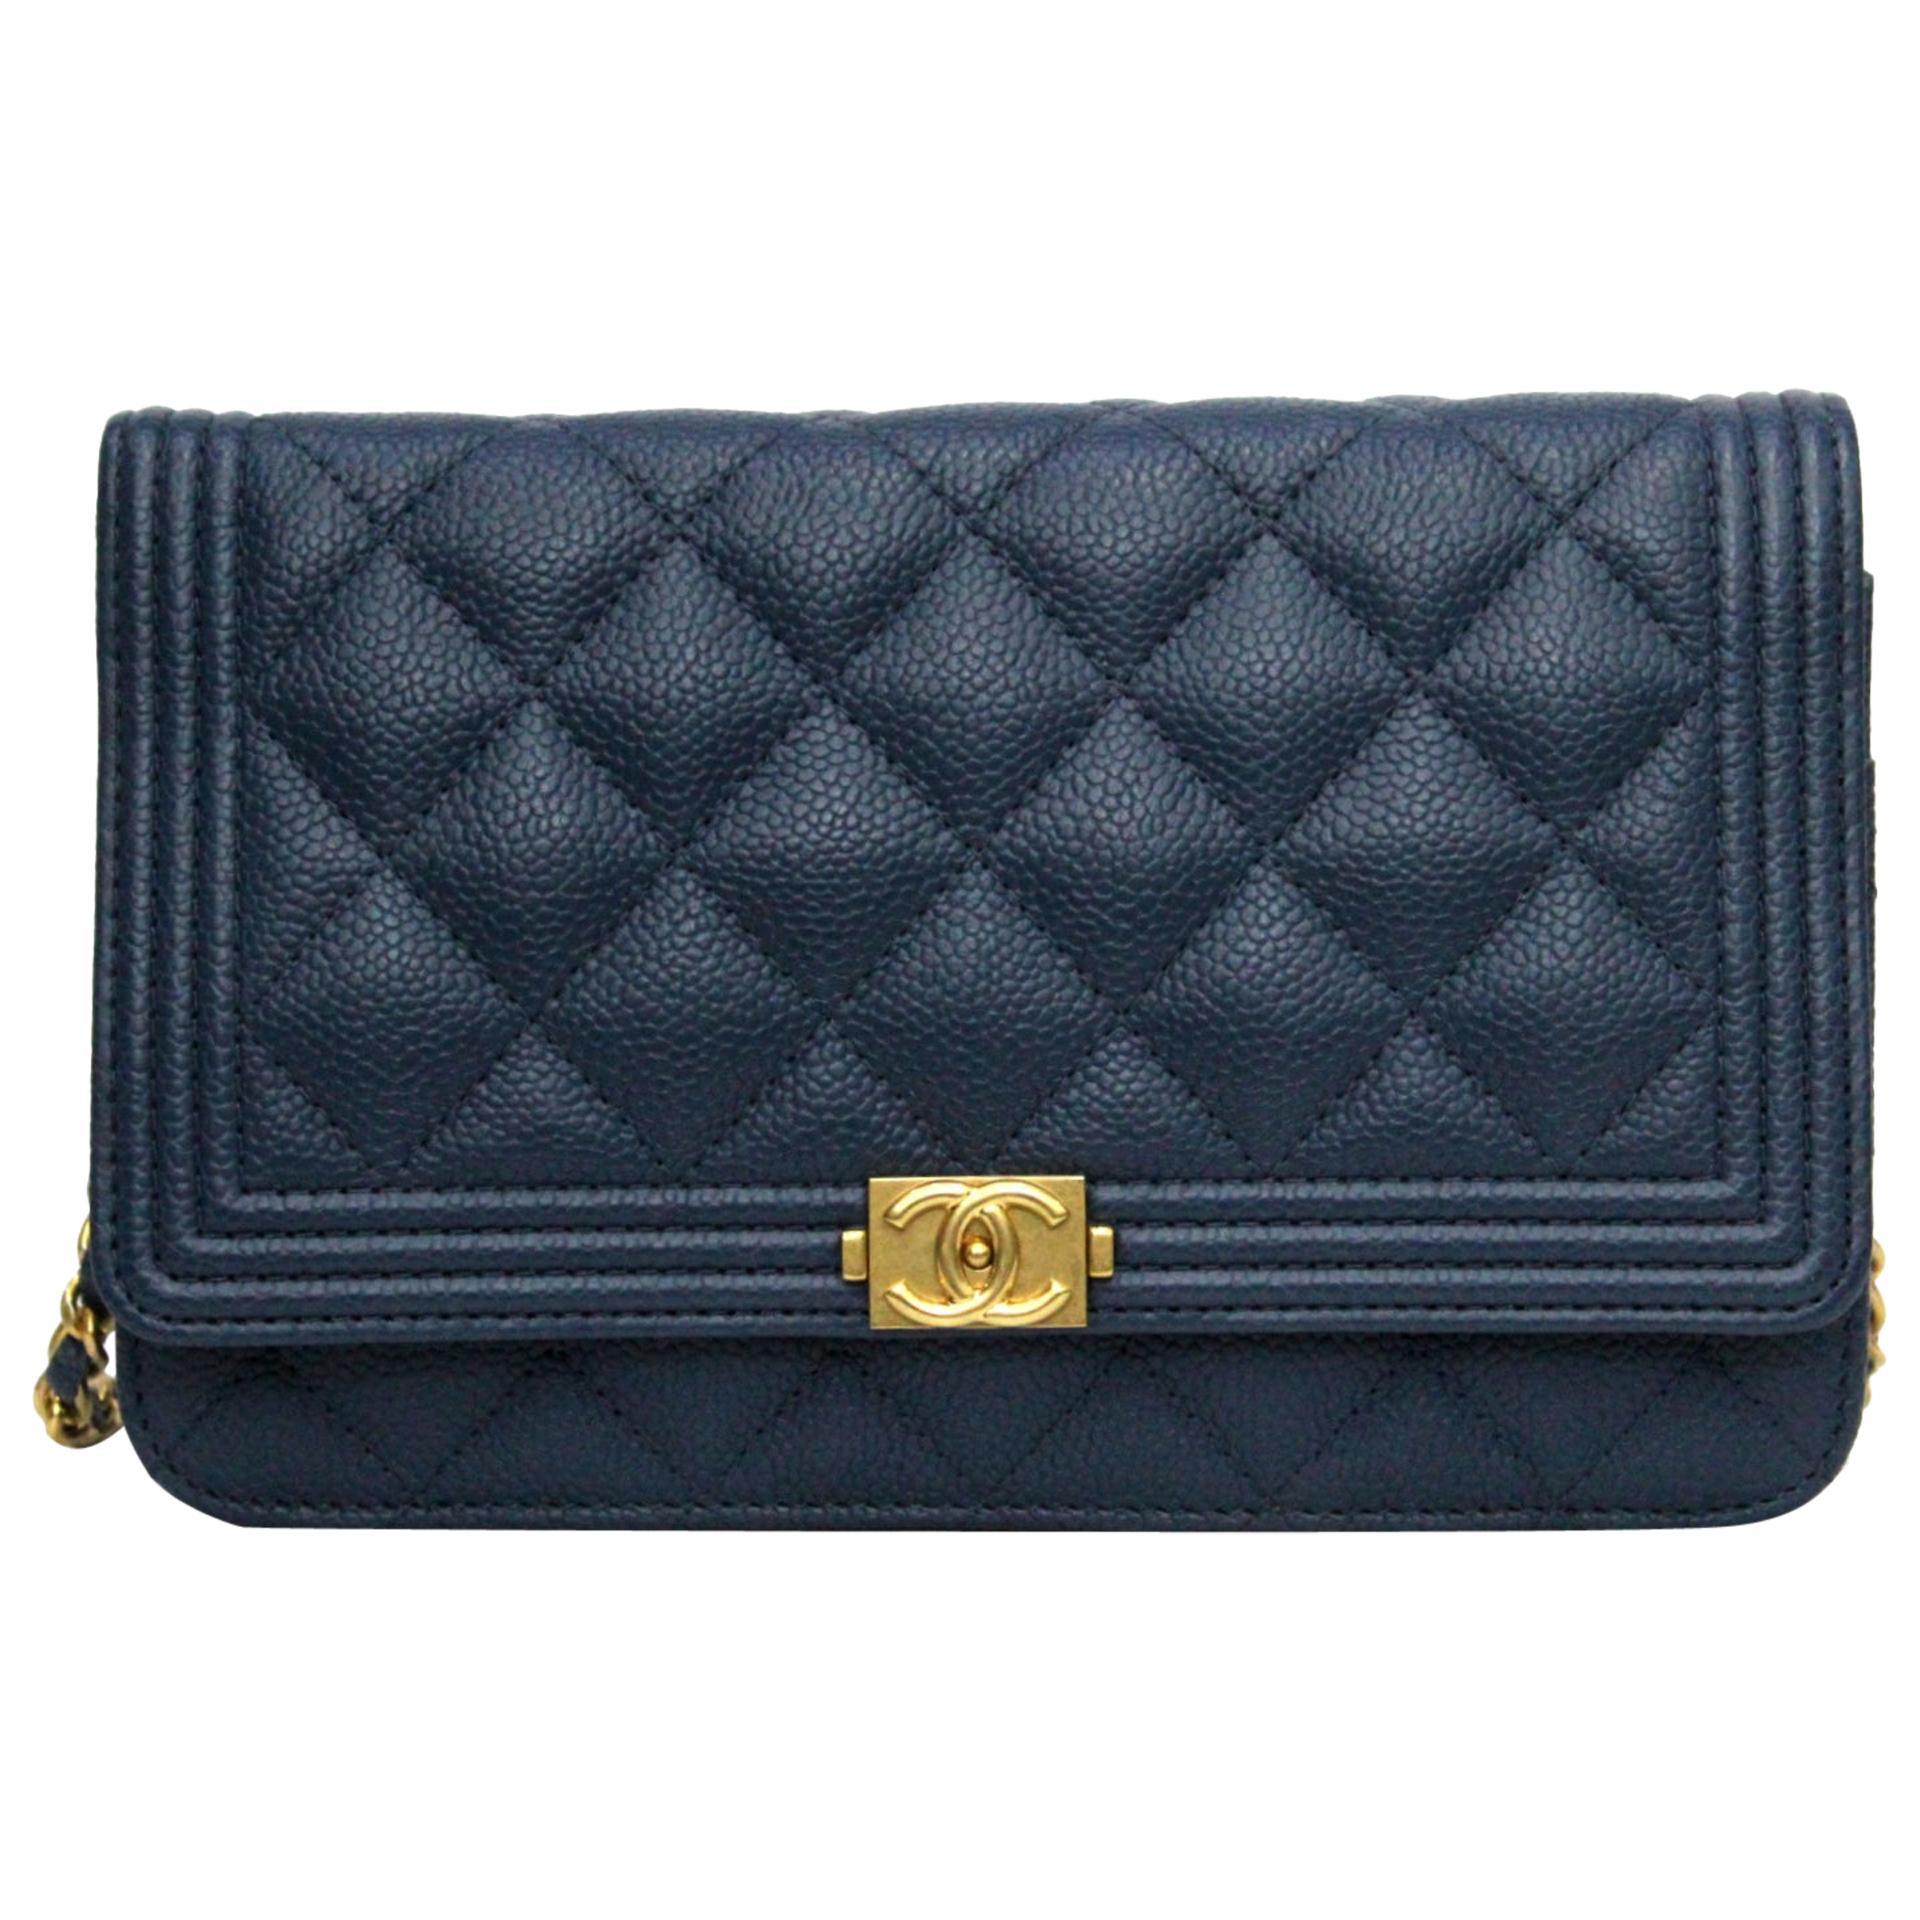 Chanel Dark Blue Caviar Leather Woc Bag